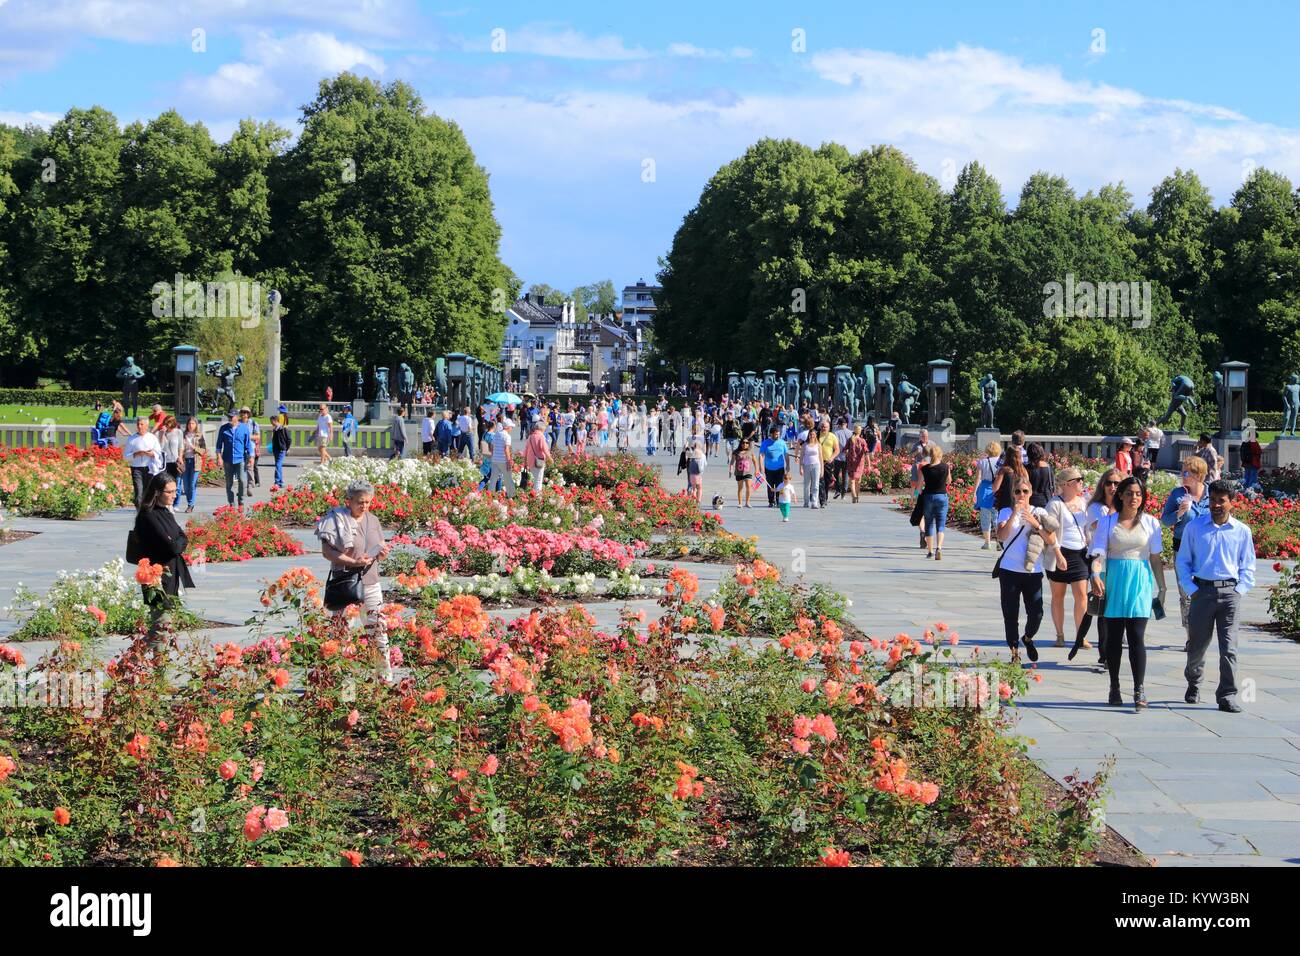 OSLO, Norvegia - 2 agosto 2015: la gente visita i giardini e Vigeland installazione nel Parco Frogner, Oslo. 212 sculture intorno al parco sono stati tutti progettati Foto Stock